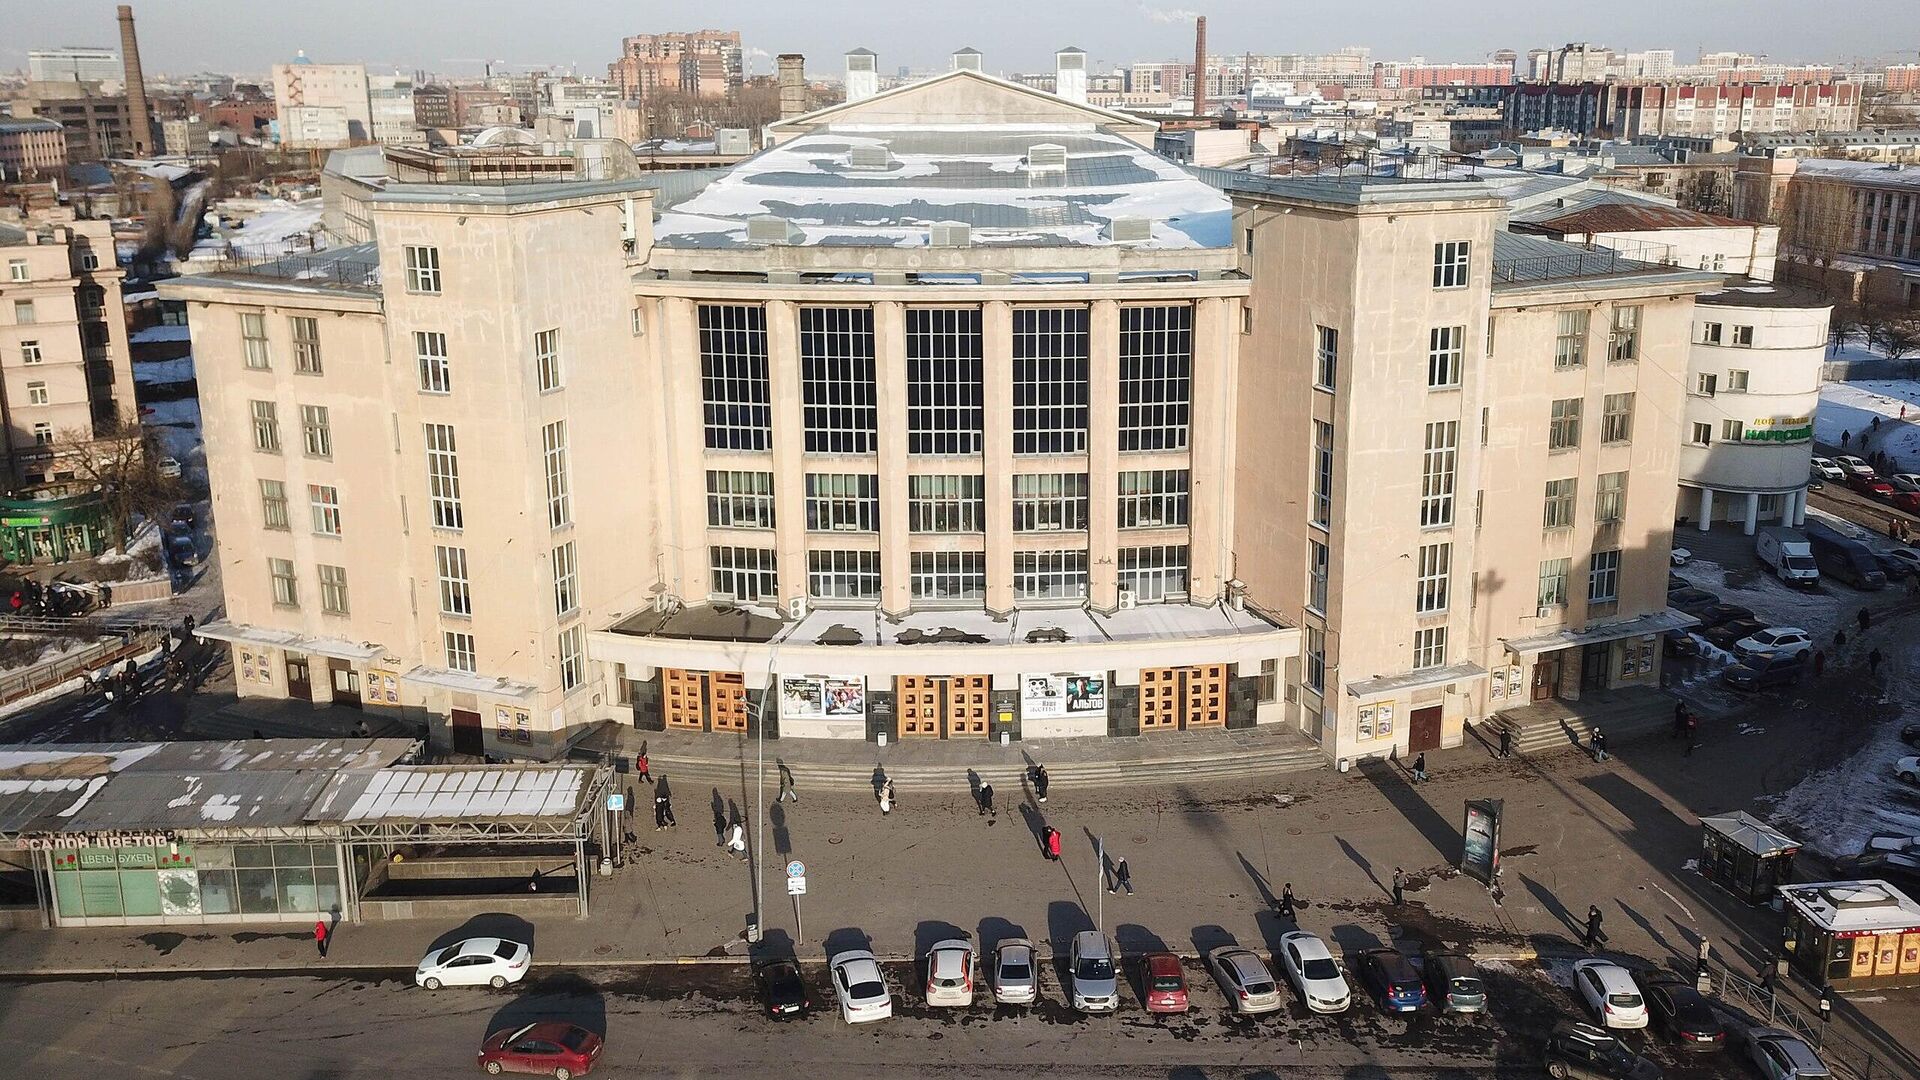 дворец искусств ленинградской области схема зала